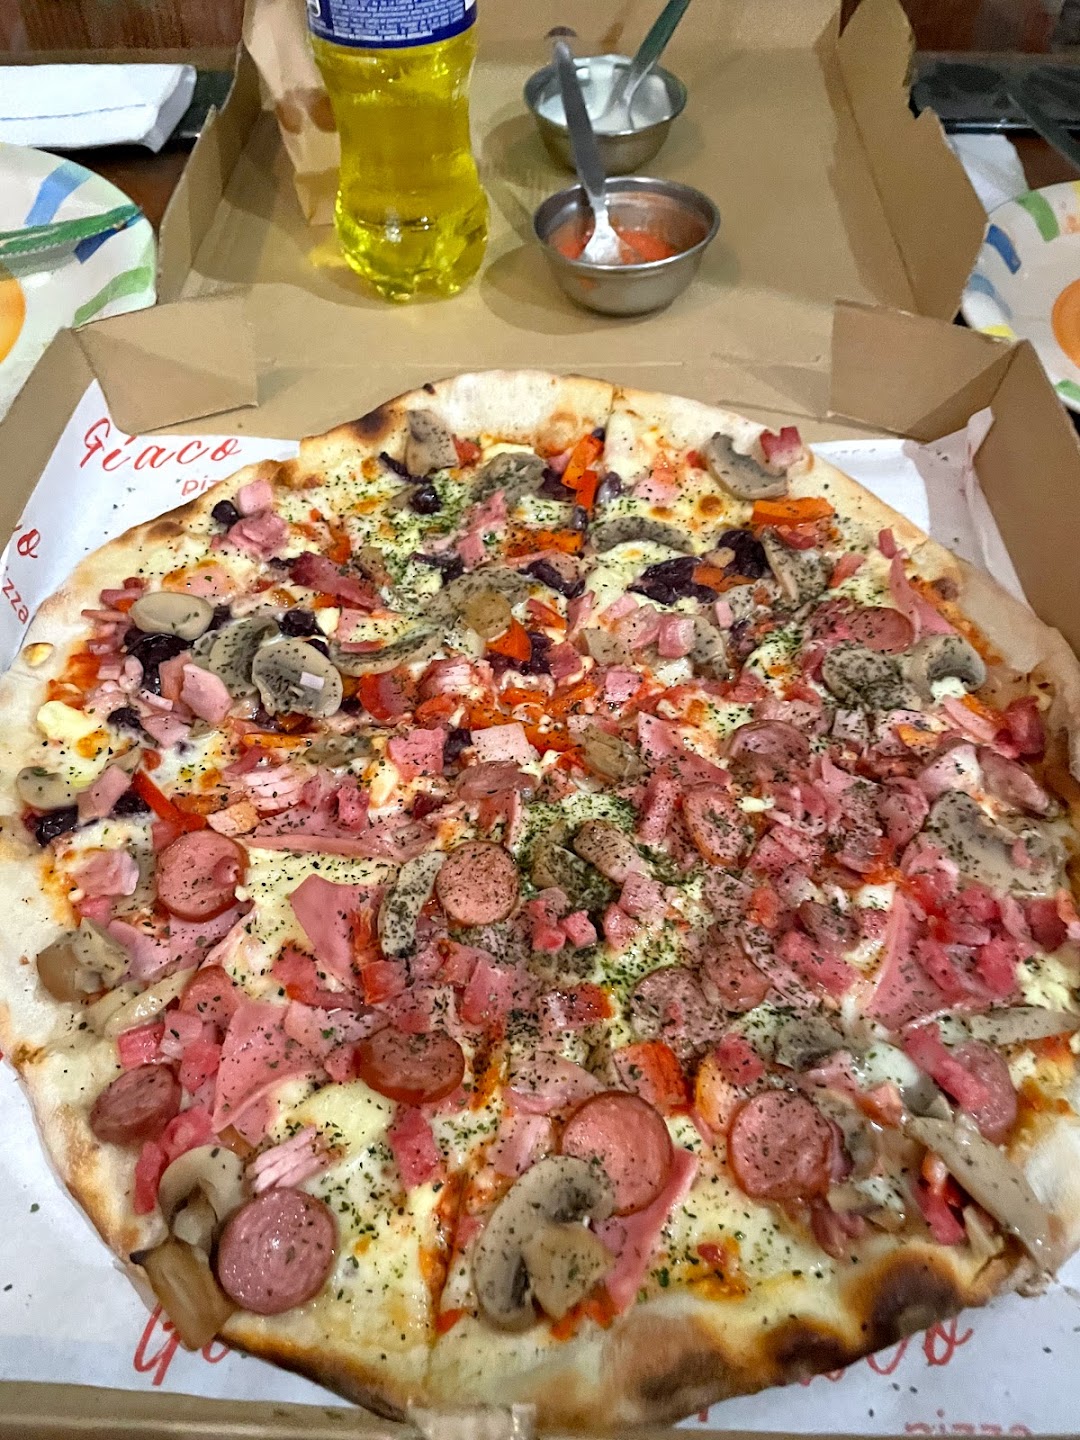 Giaco pizza